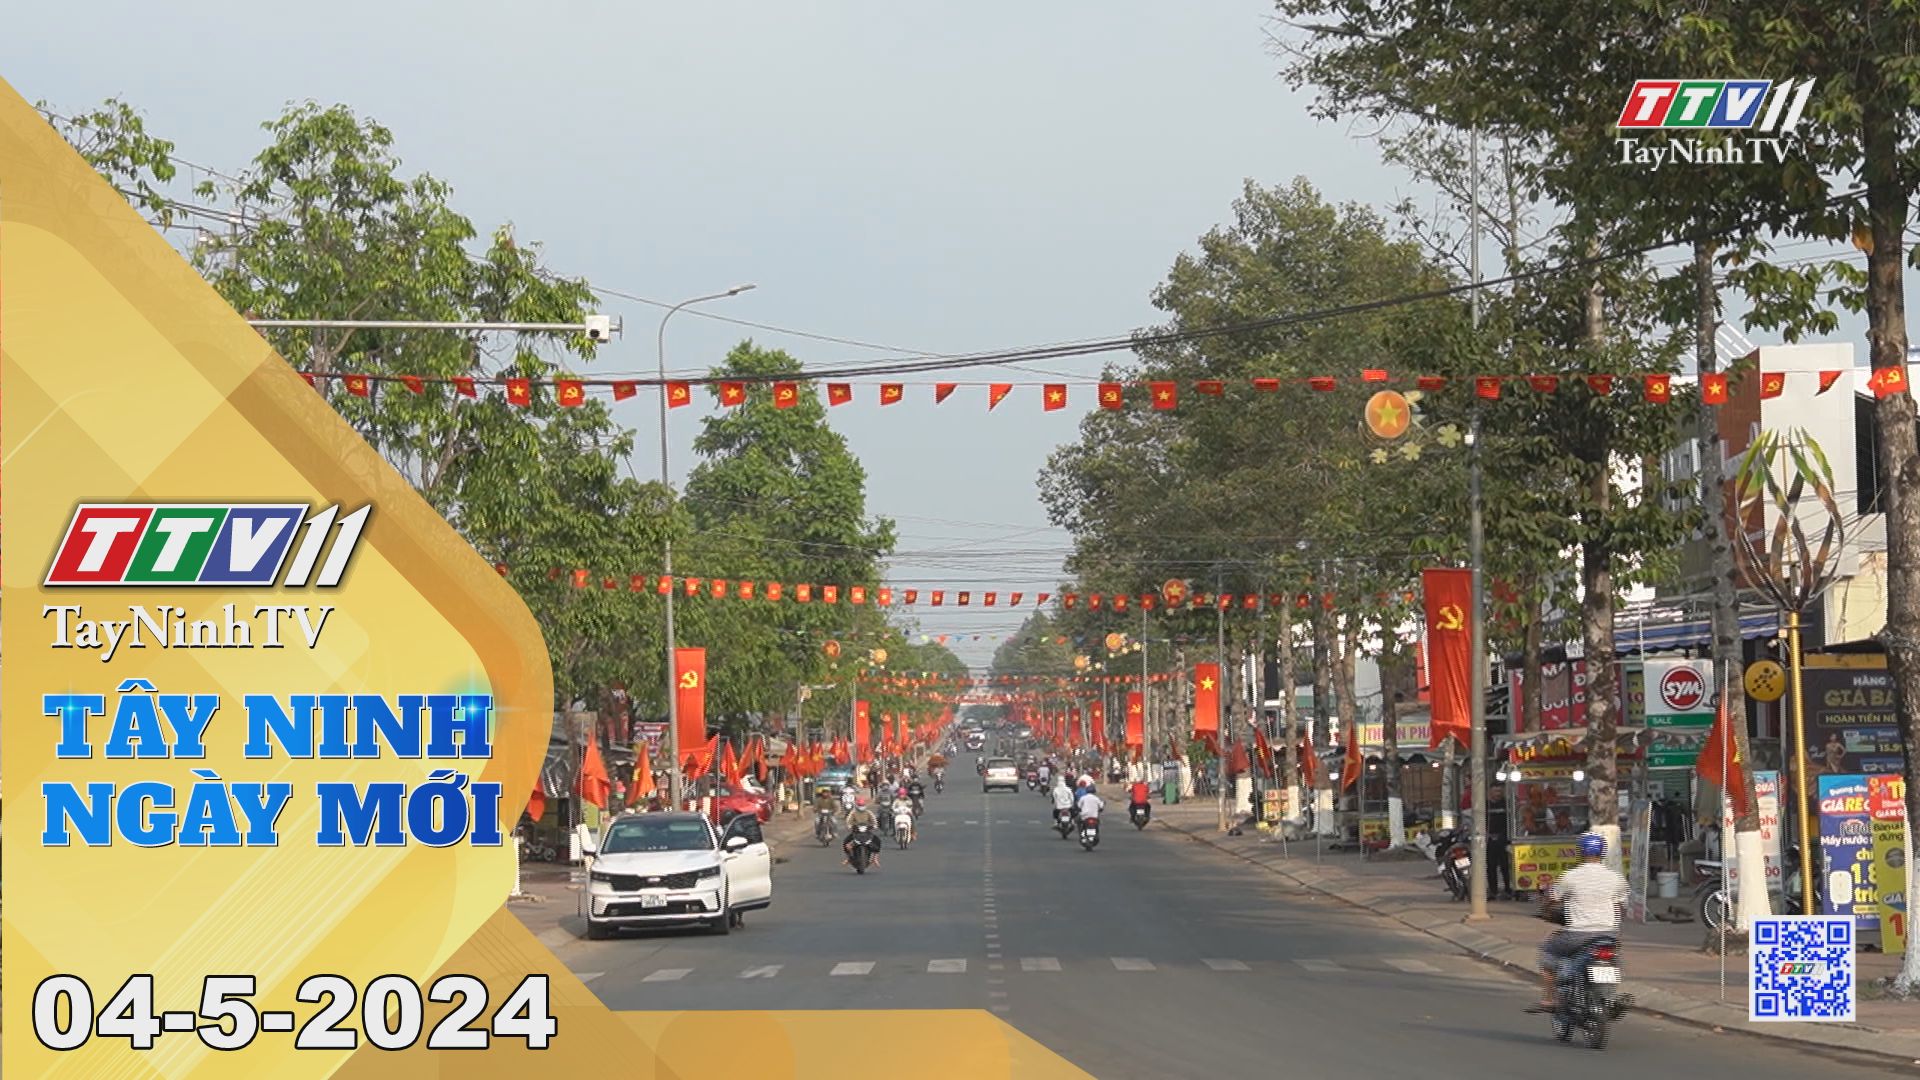 Tây Ninh ngày mới 04-5-2024 | Tin tức hôm nay | TayNinhTV